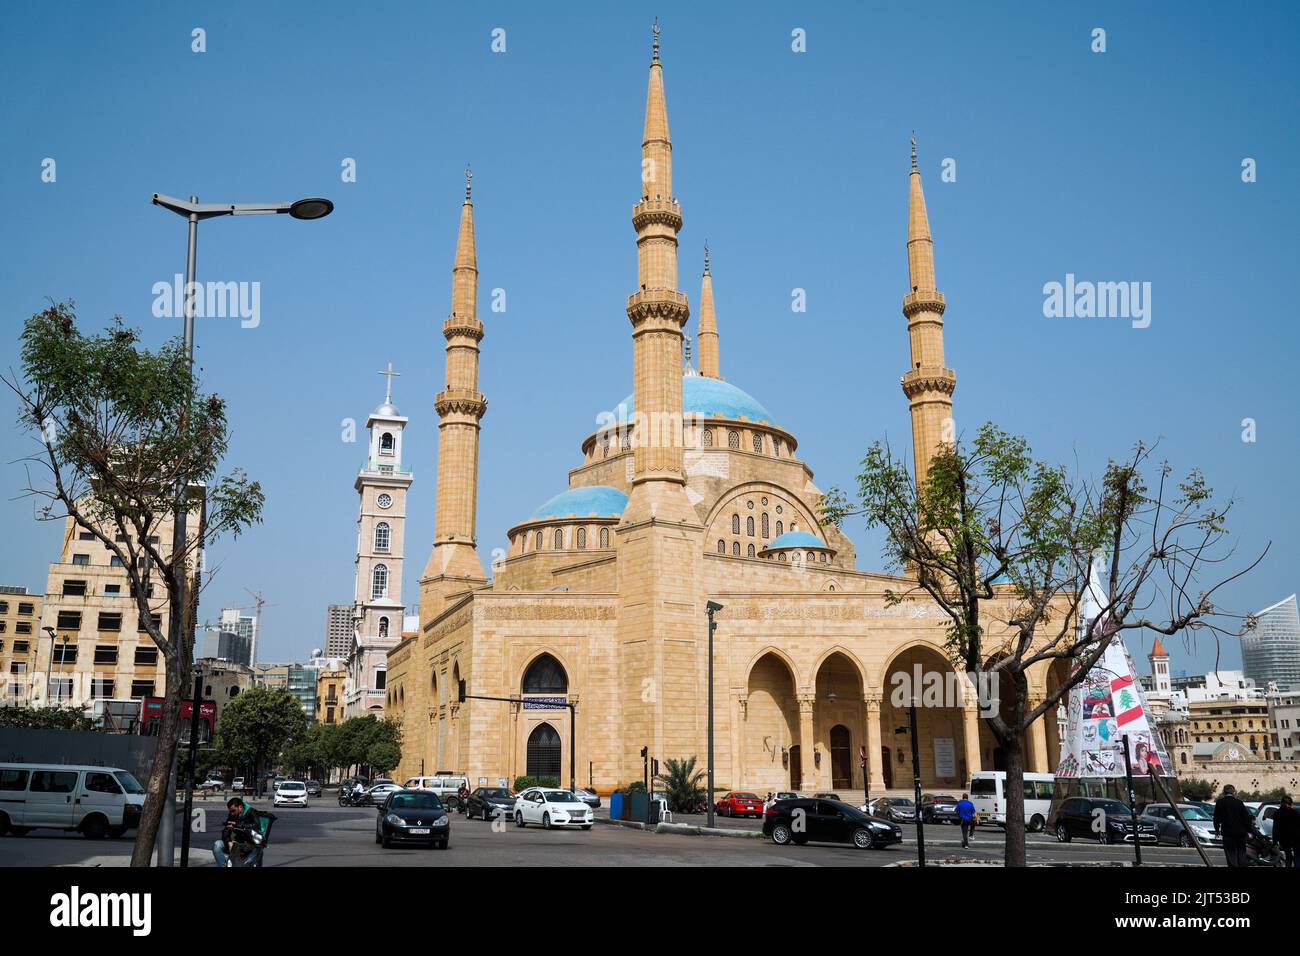 Beirut, Libanon : Mohammad Al-Amin sunnitisch muslimische Moschee (auch bekannt als die Blaue Moschee) und der Glockenturm der St. George's Cathedral auf dem Märtyrerplatz, in der Innenstadt von Beirut, Libanon Stockfoto